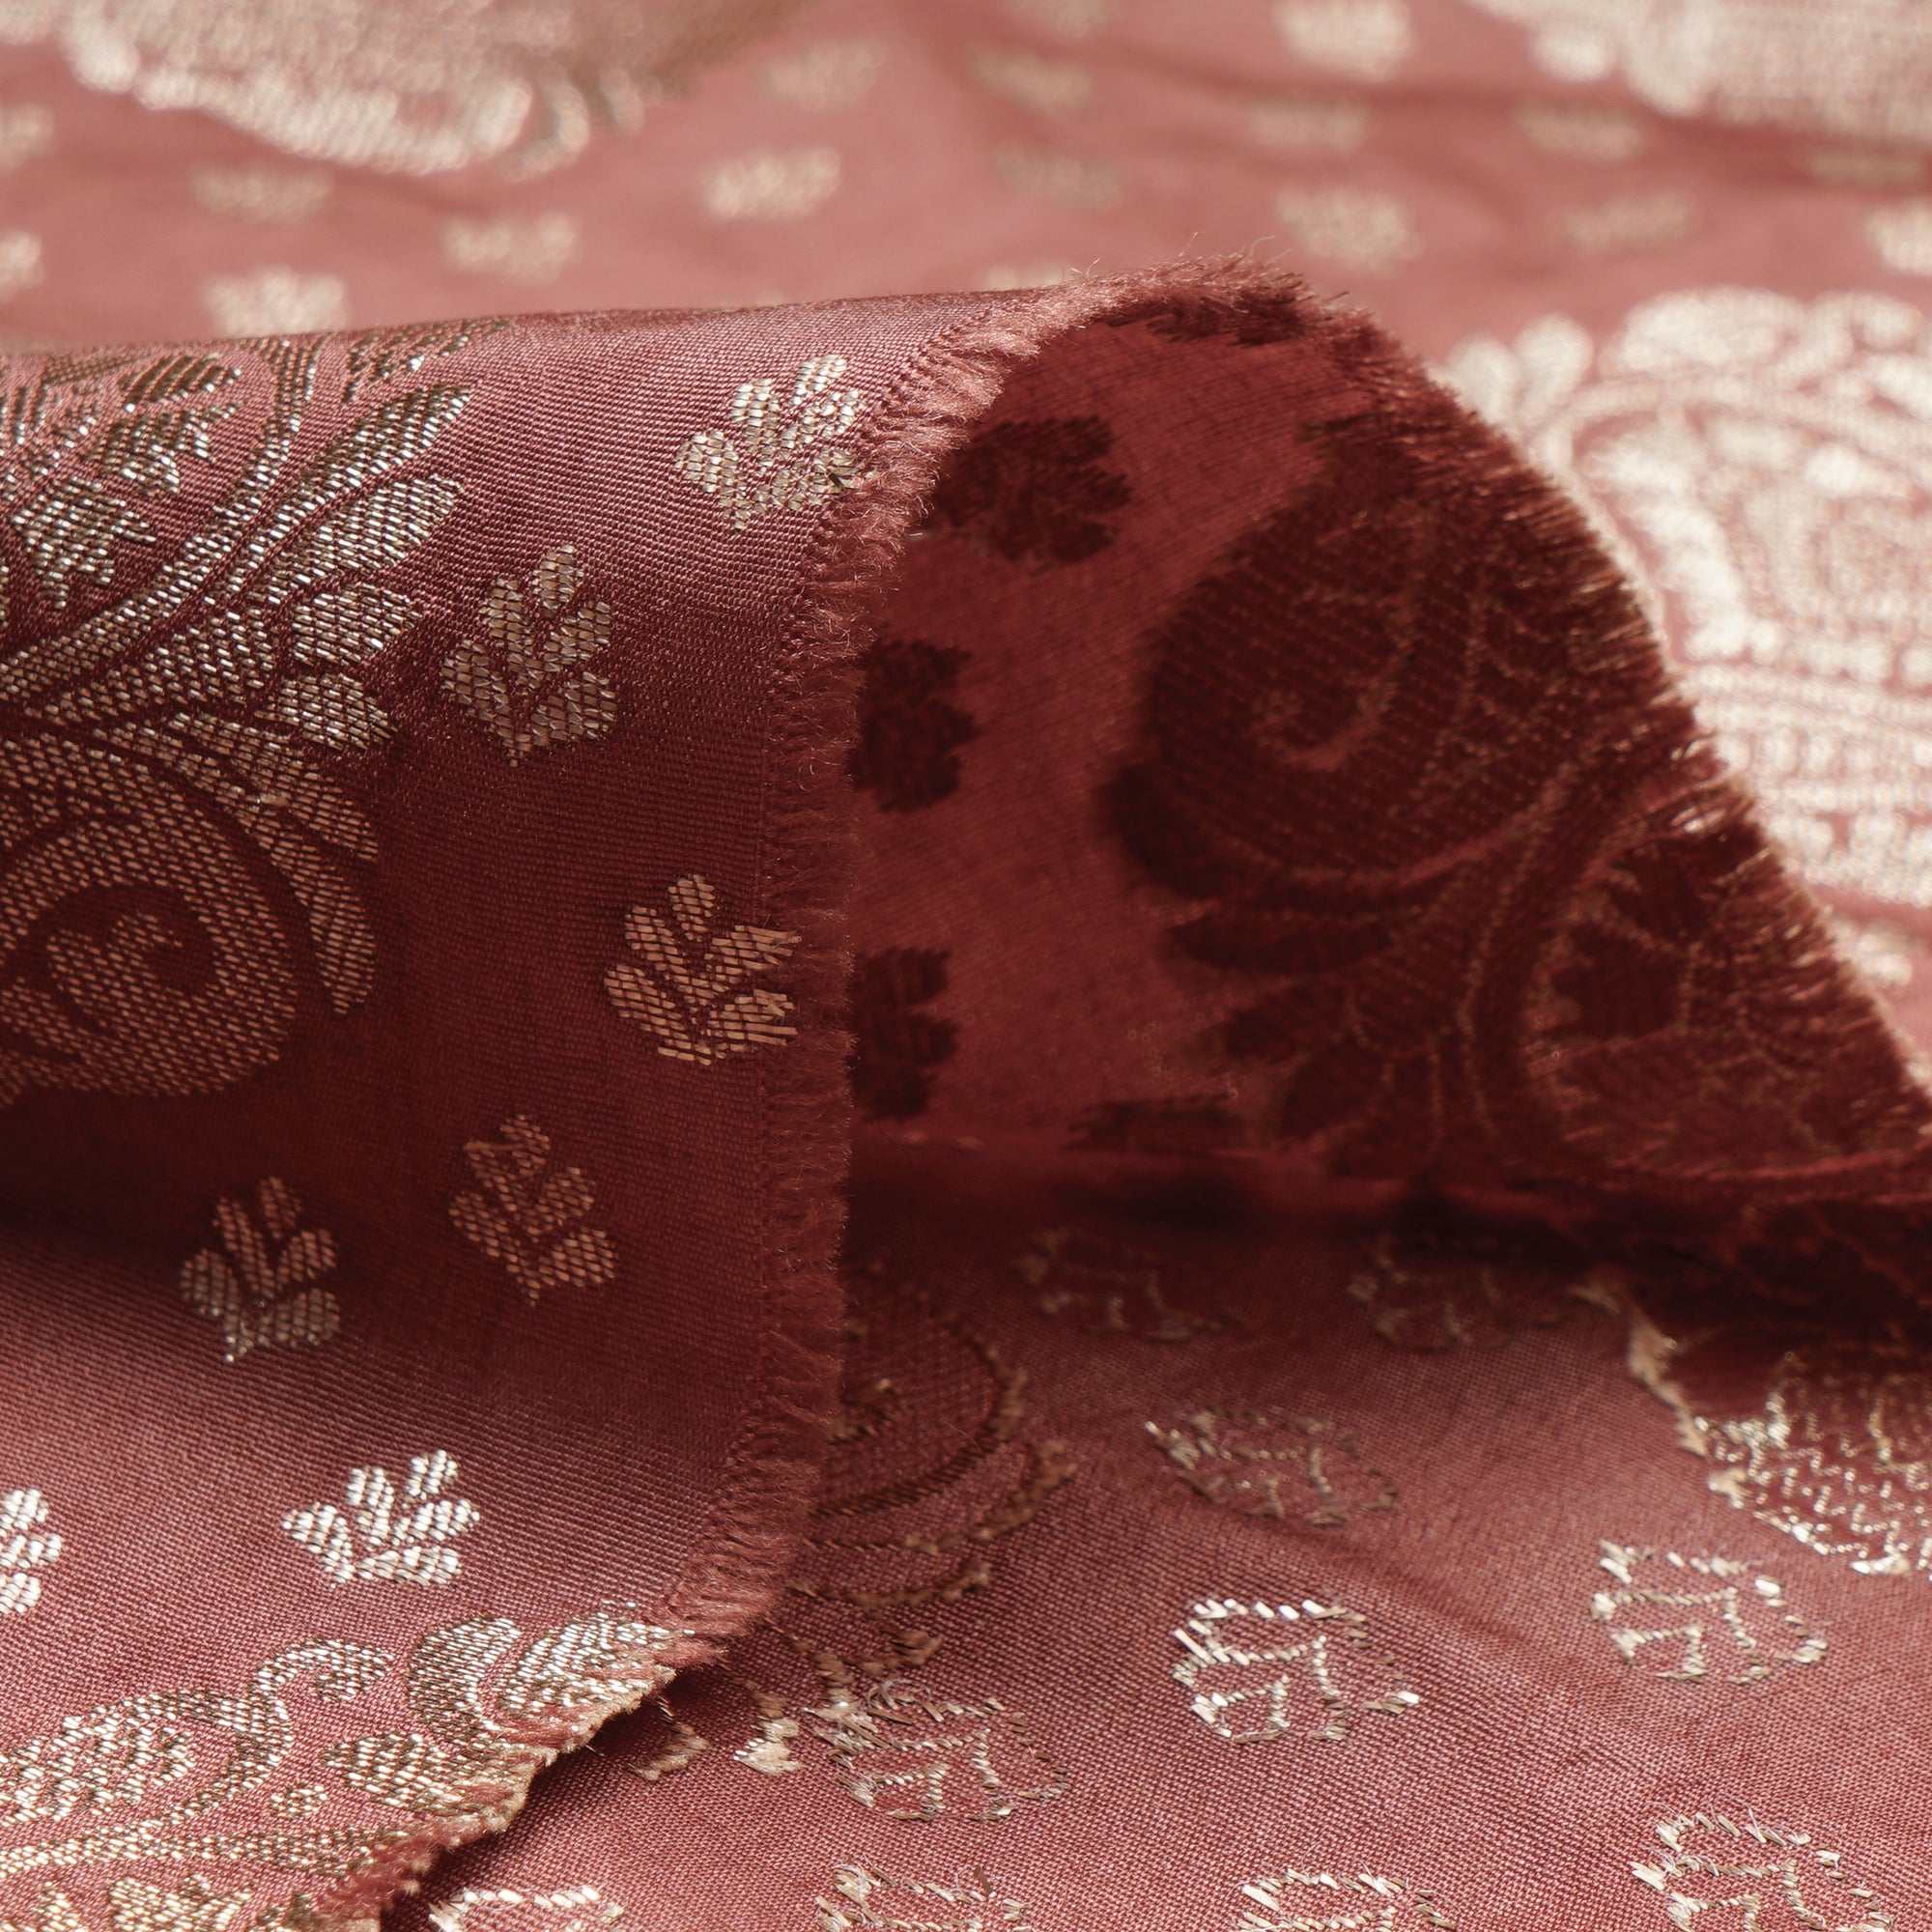 Aragon Floral Booti Pattern Blended Banarasi Brocade Fabric